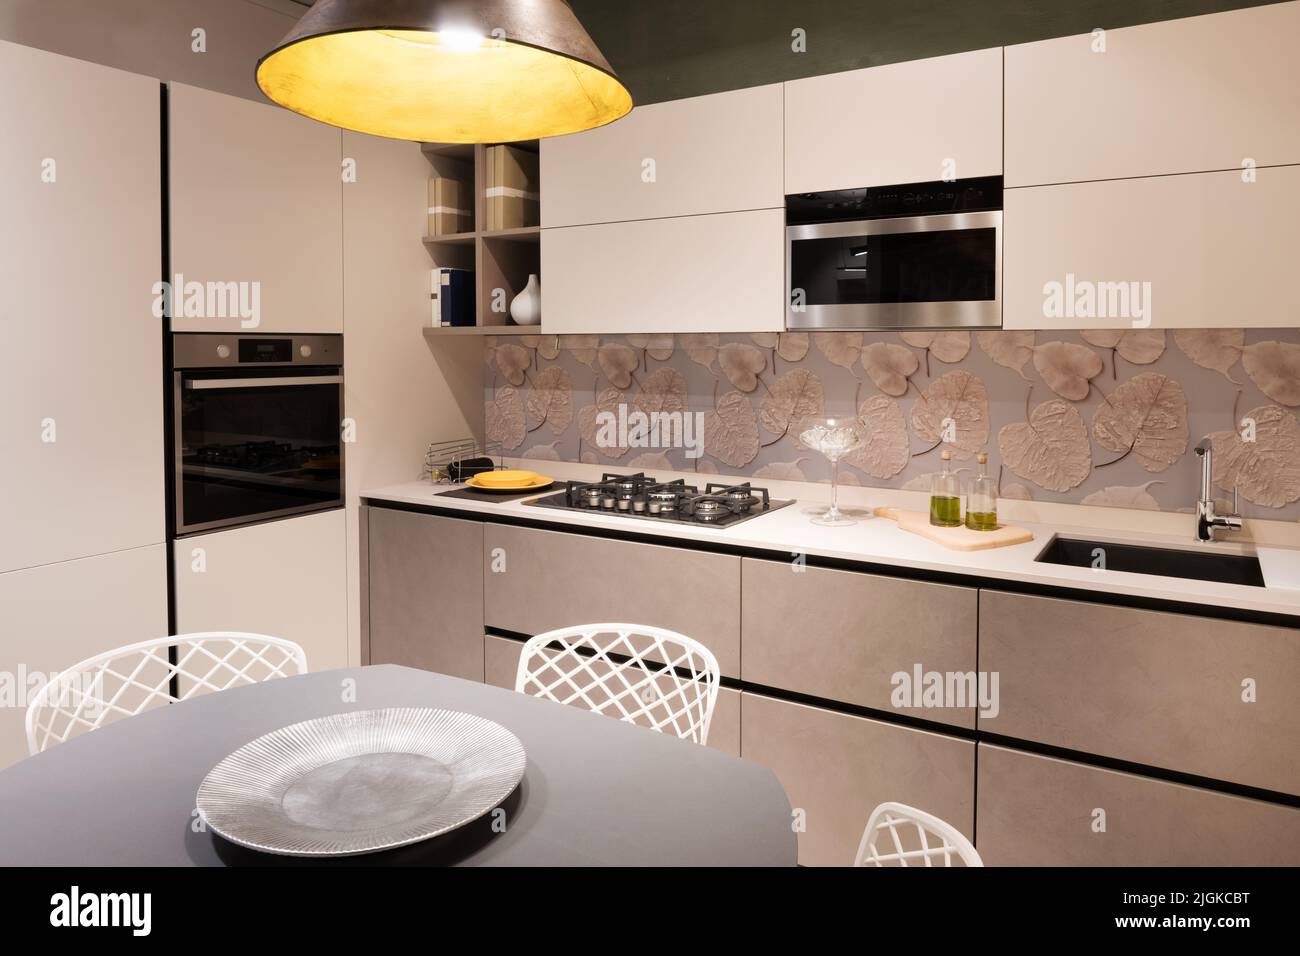 Innenraum der Küche mit modernen Möbeln und eingebauten Geräten mit heller Lampe zu Hause beleuchtet Stockfoto